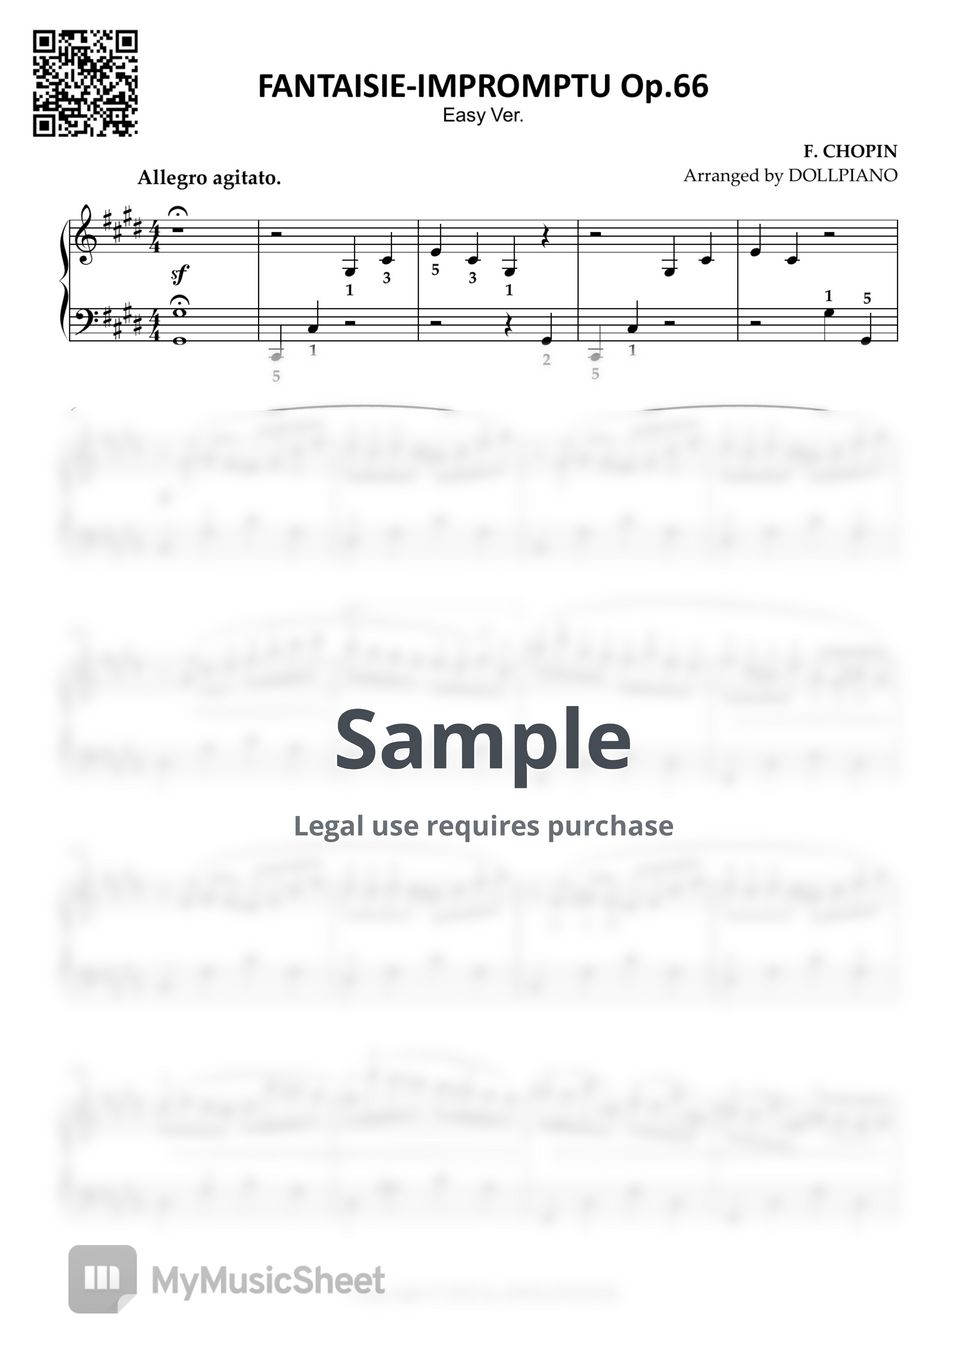 쇼팽 - 즉흥 환상곡 (체르니 수준의 쉬운, 조표 없는 쉬운 키) by DOLLPIANO